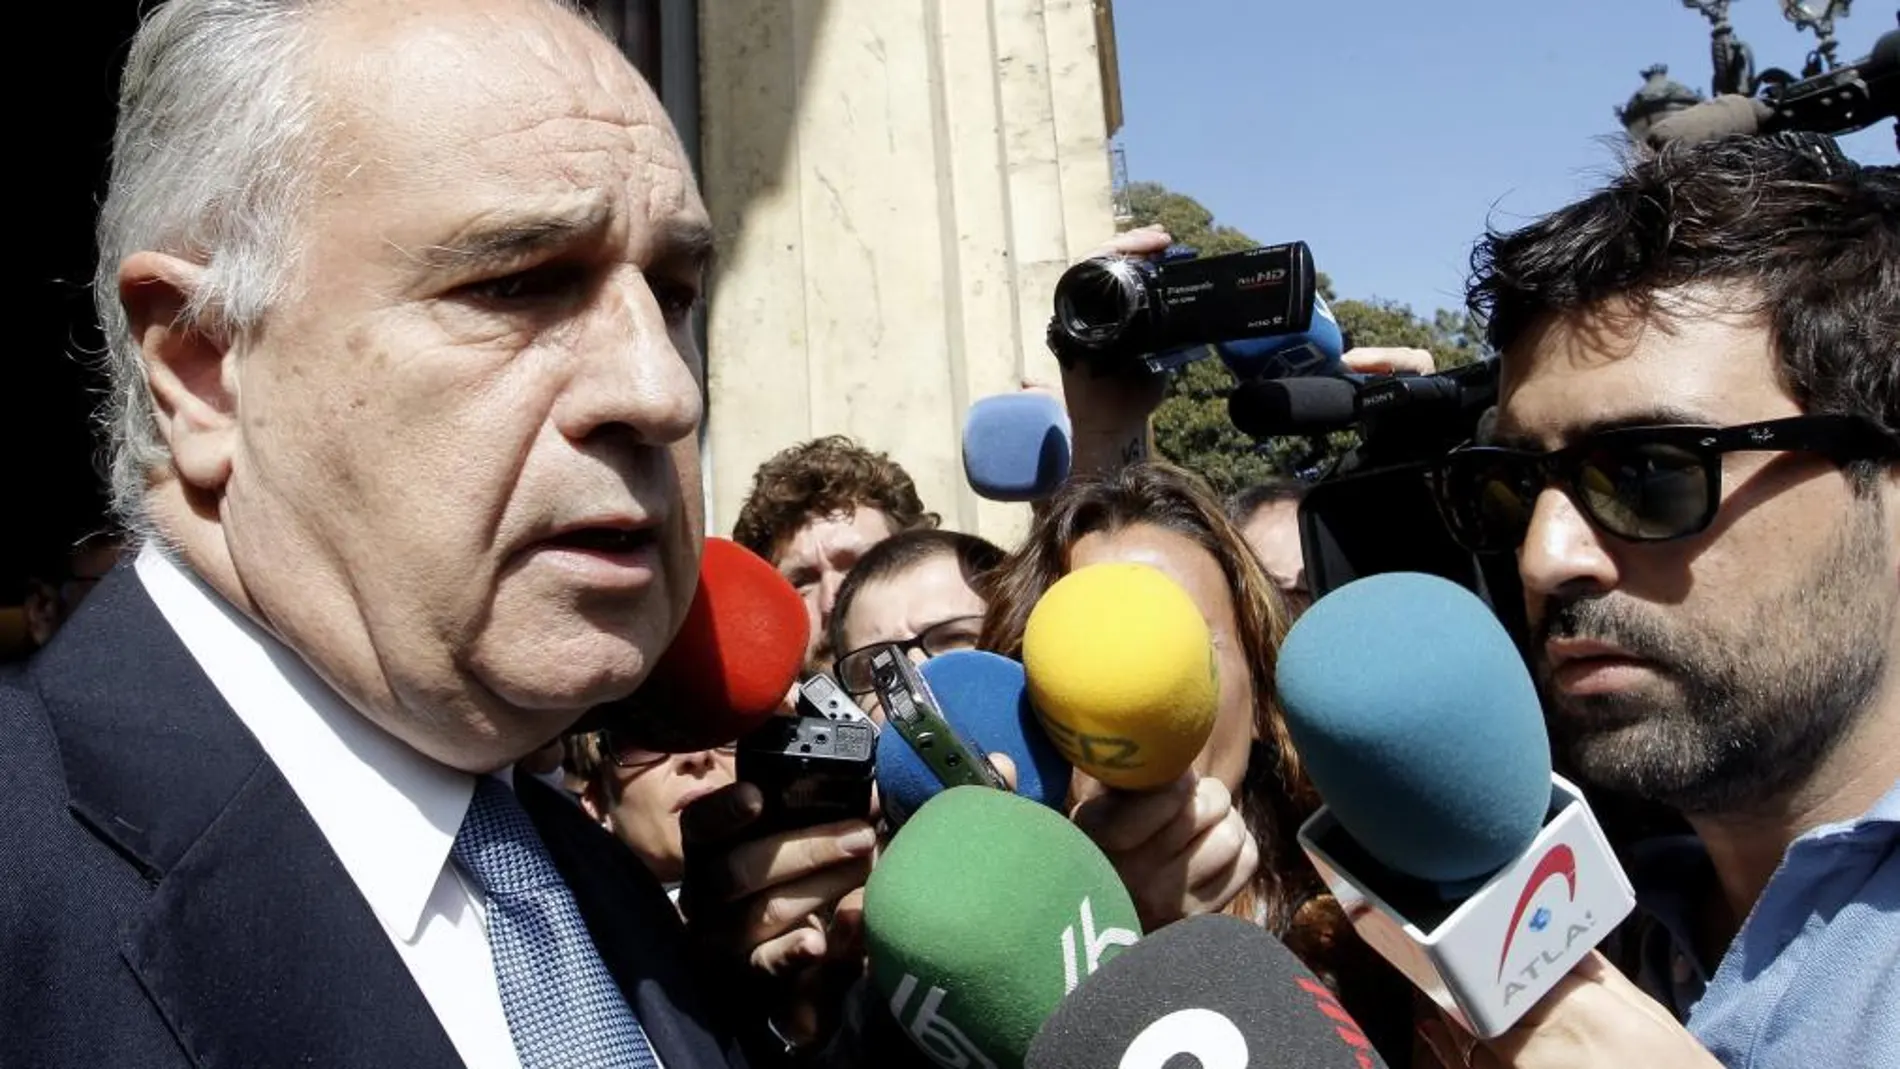 El exconseler de Solidaridad, Rafael Blasco, declara ante los medios de comunicación a su salida del Tribunal Superior de la Comunidad Valenciana